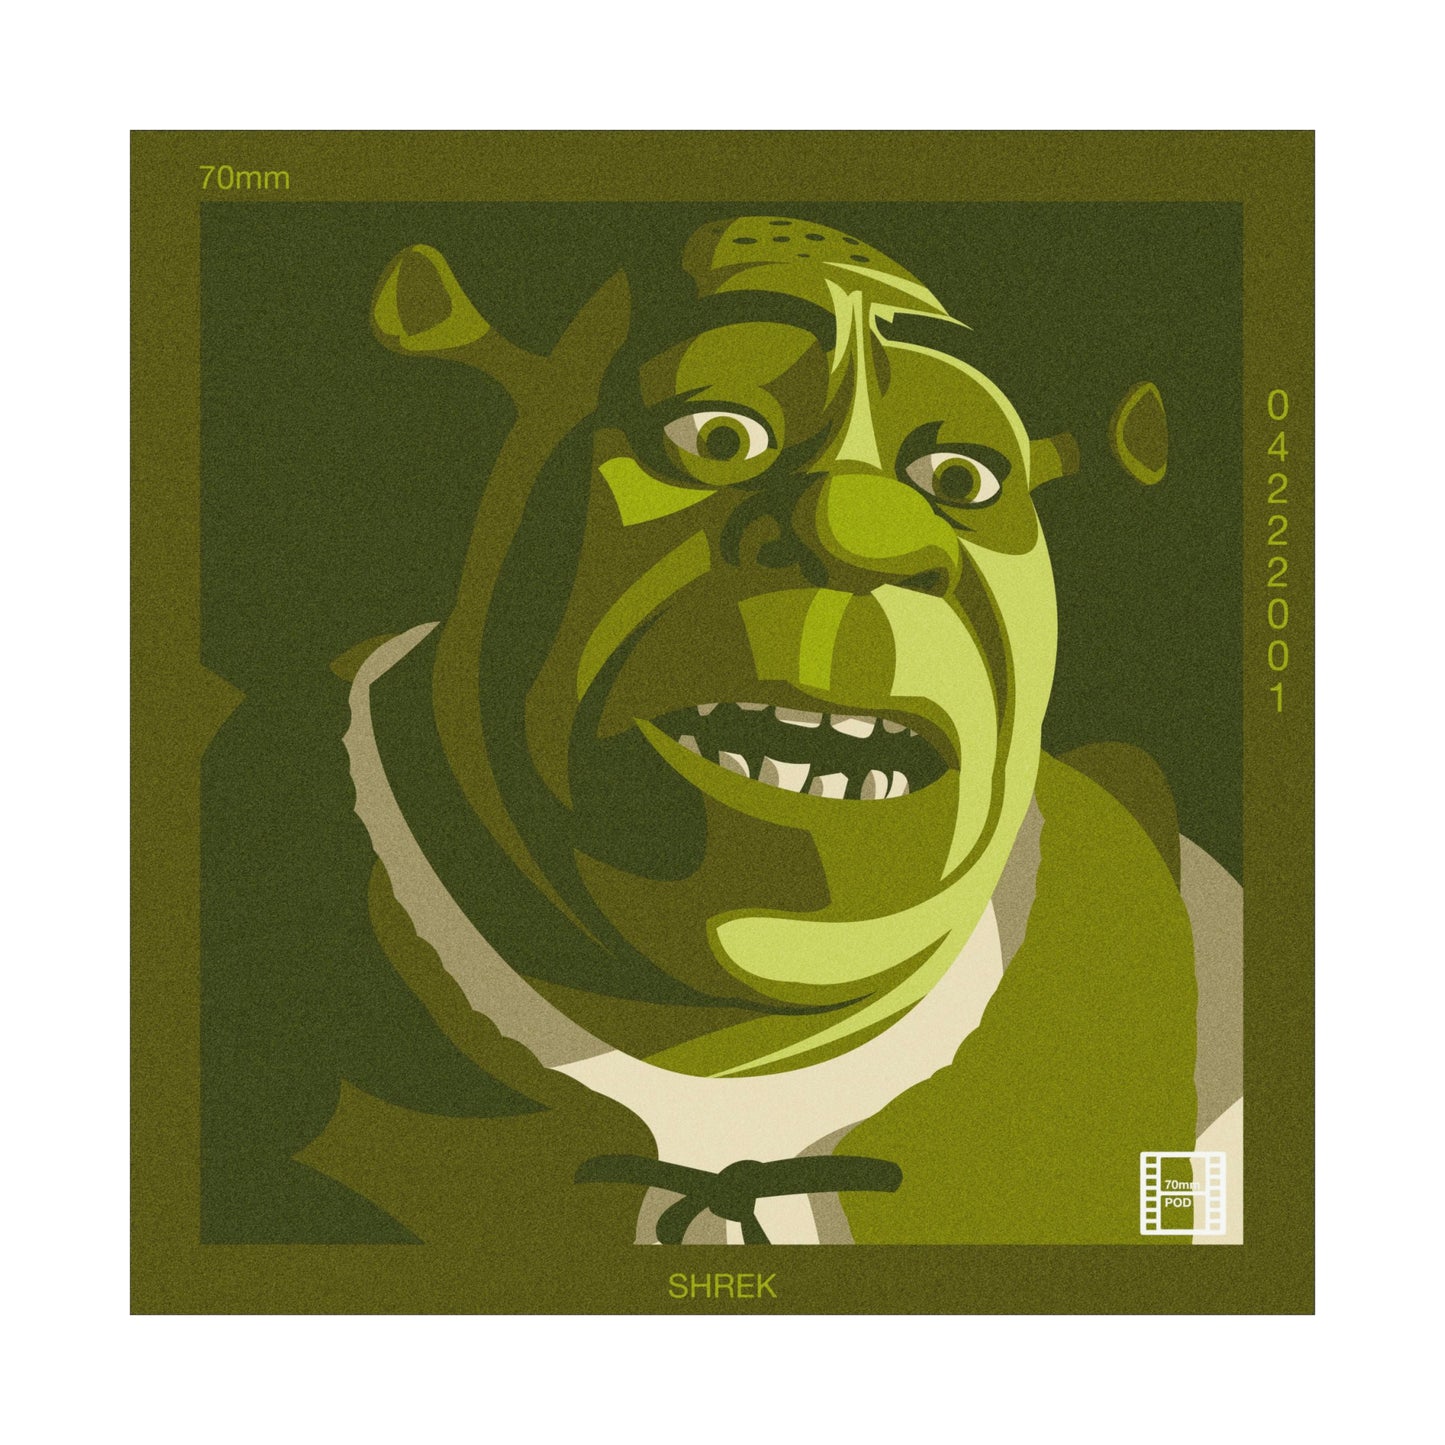 Bonus Episode: Shrek